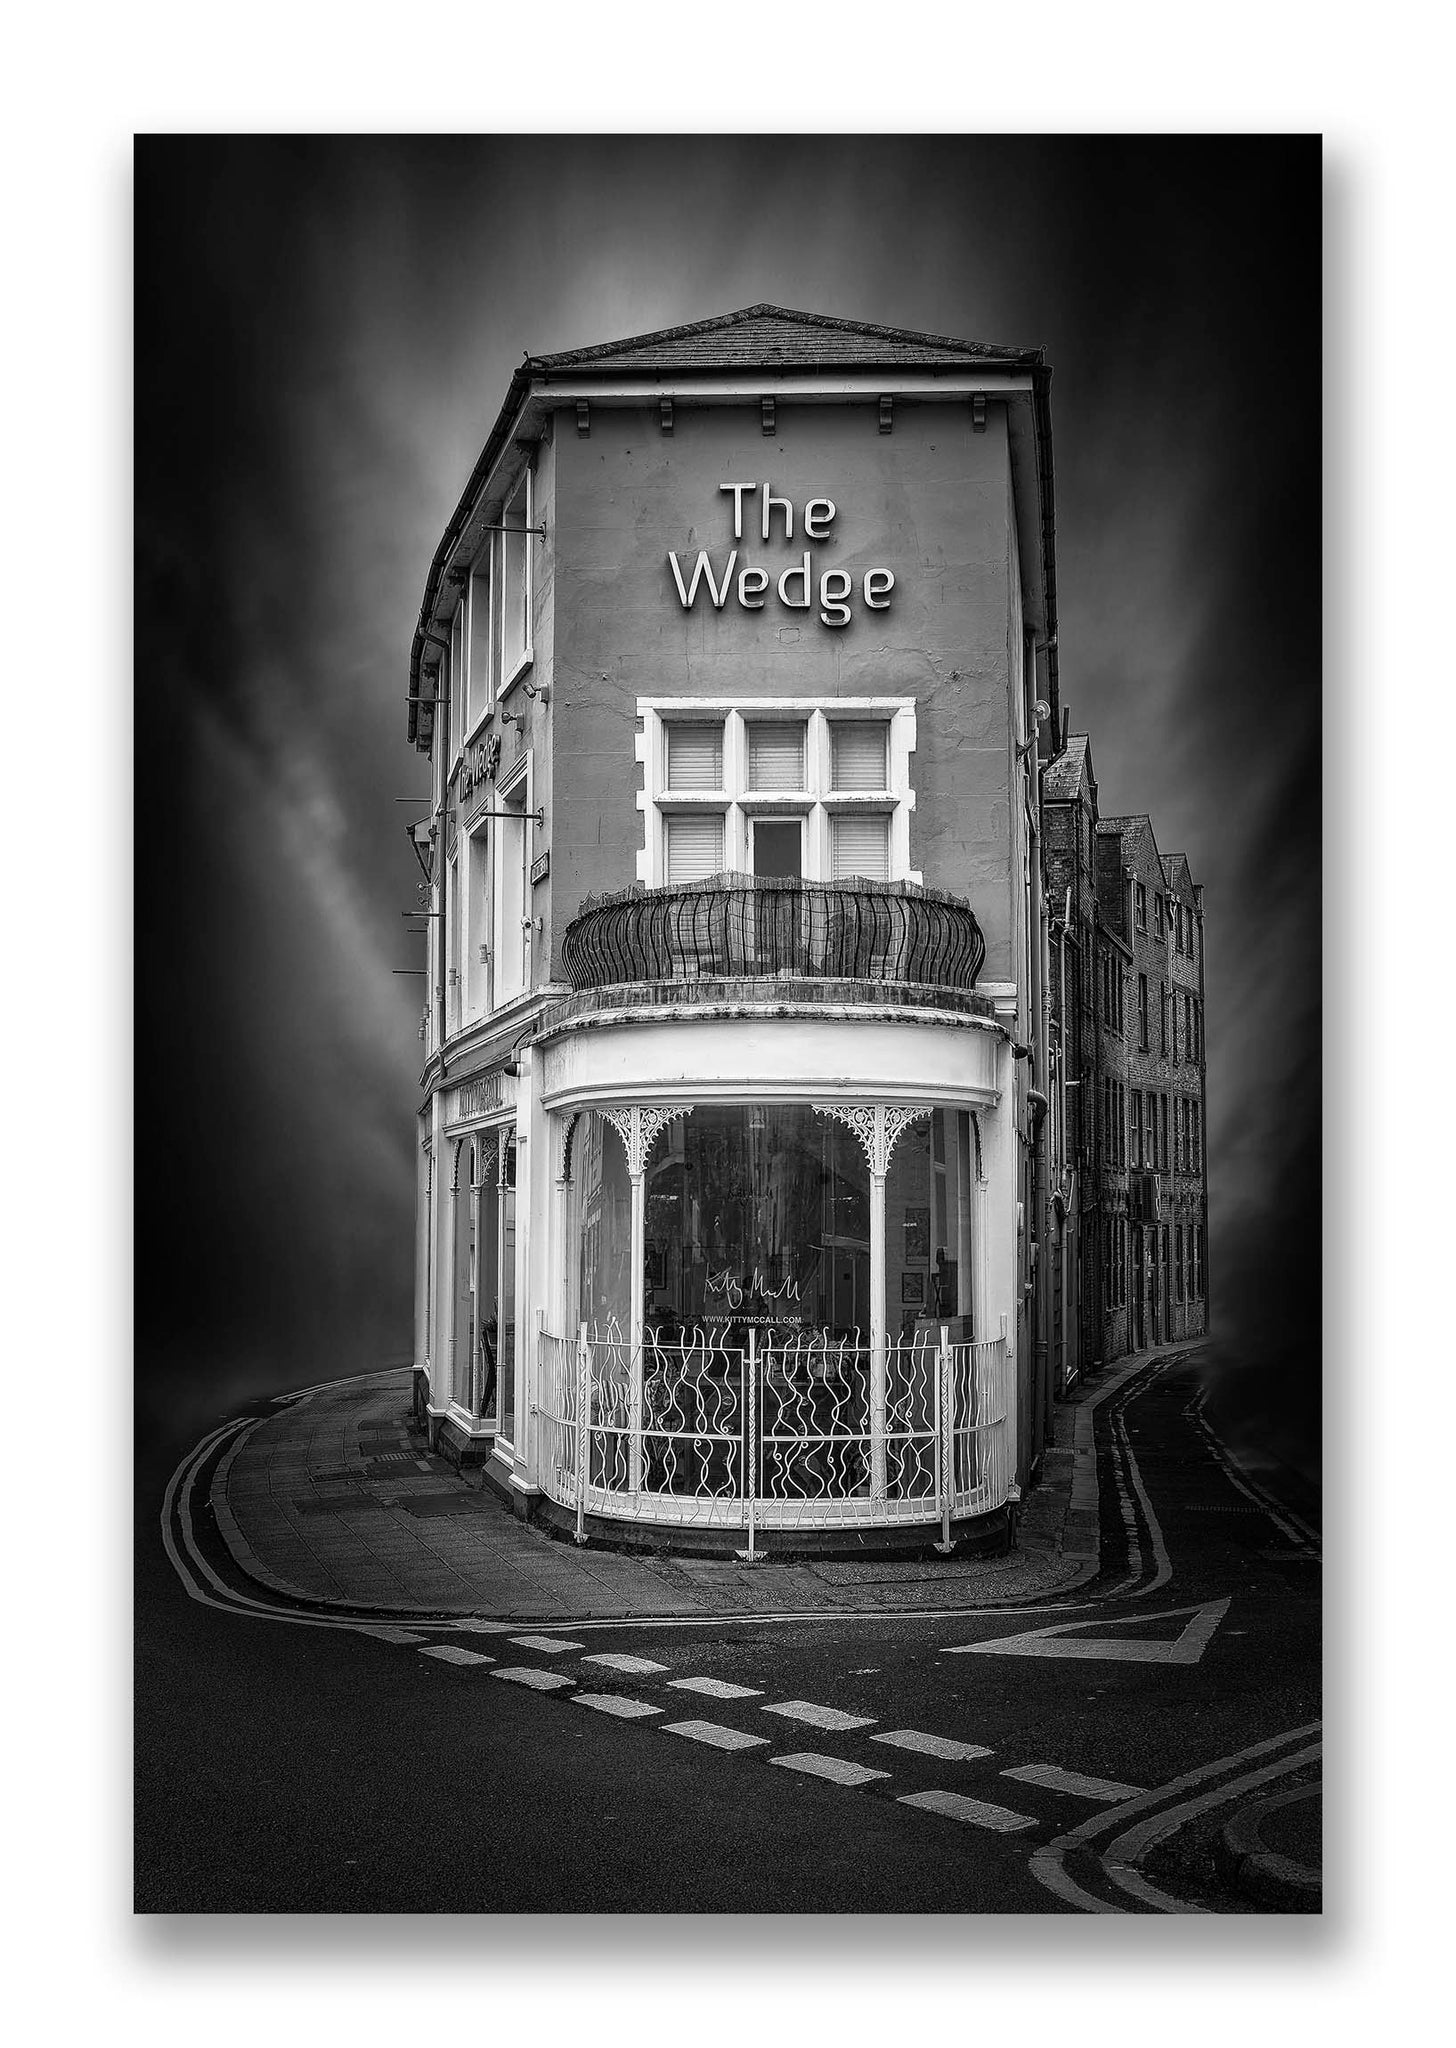 The Wedge, Folkestone